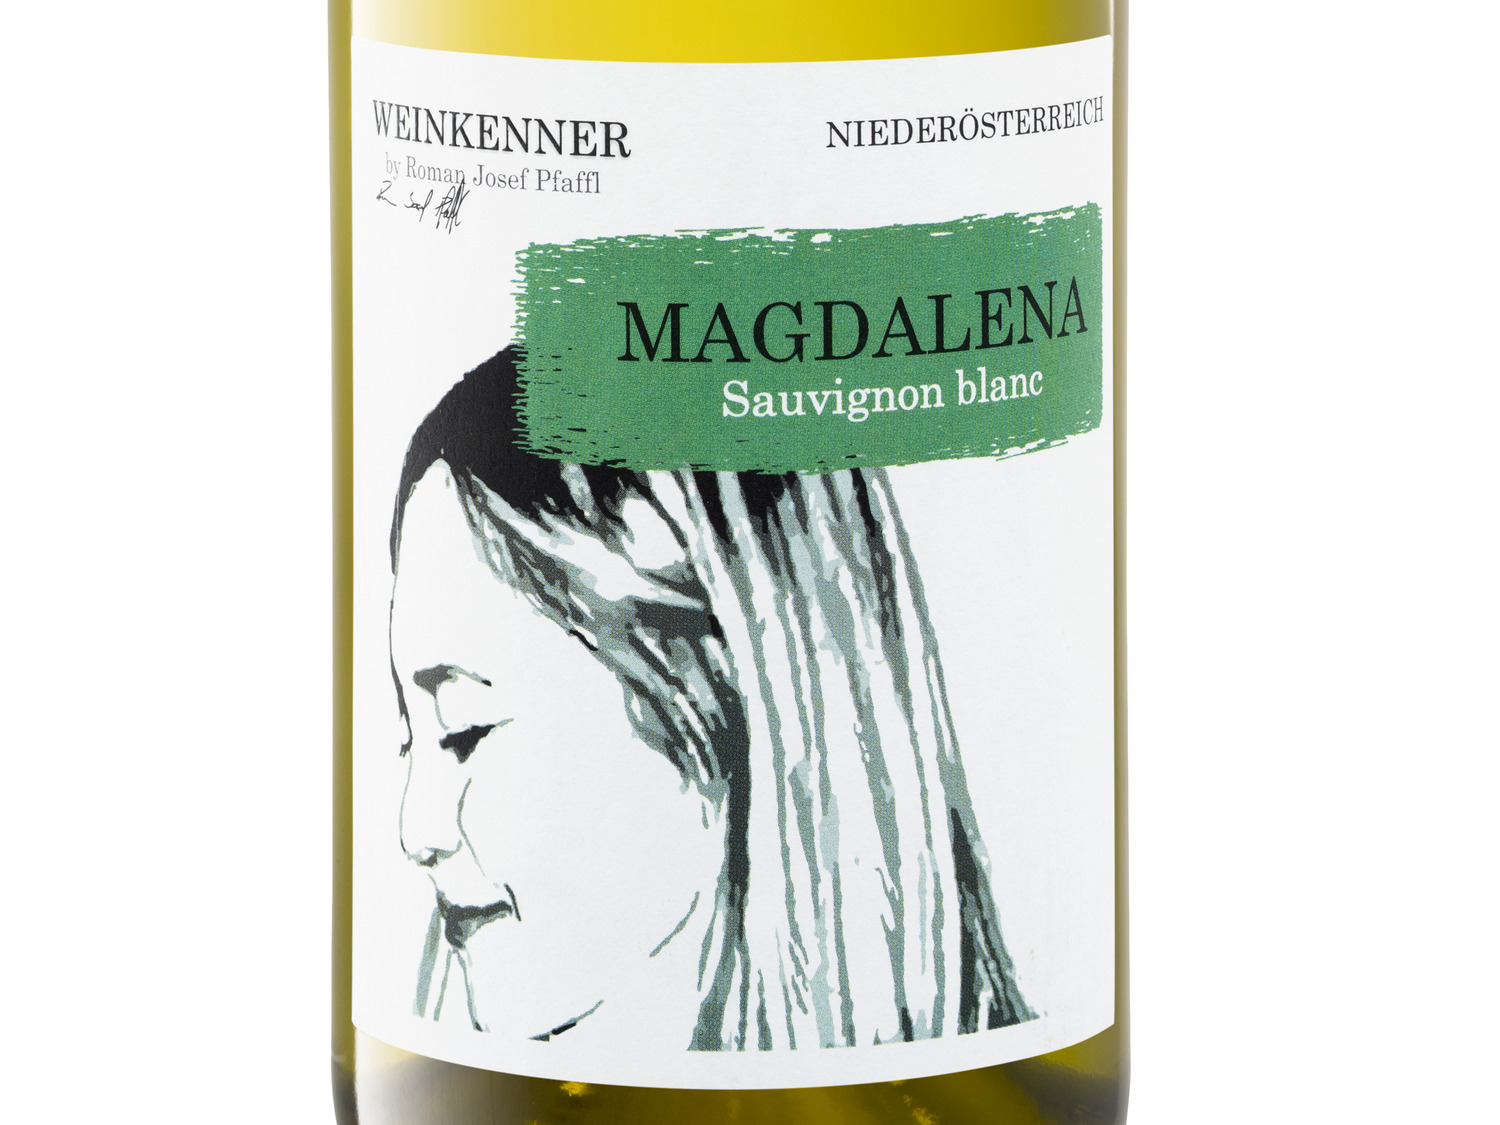 Blanc Pfaffl Magdalena trocken… by Sauvignon Weinkenner